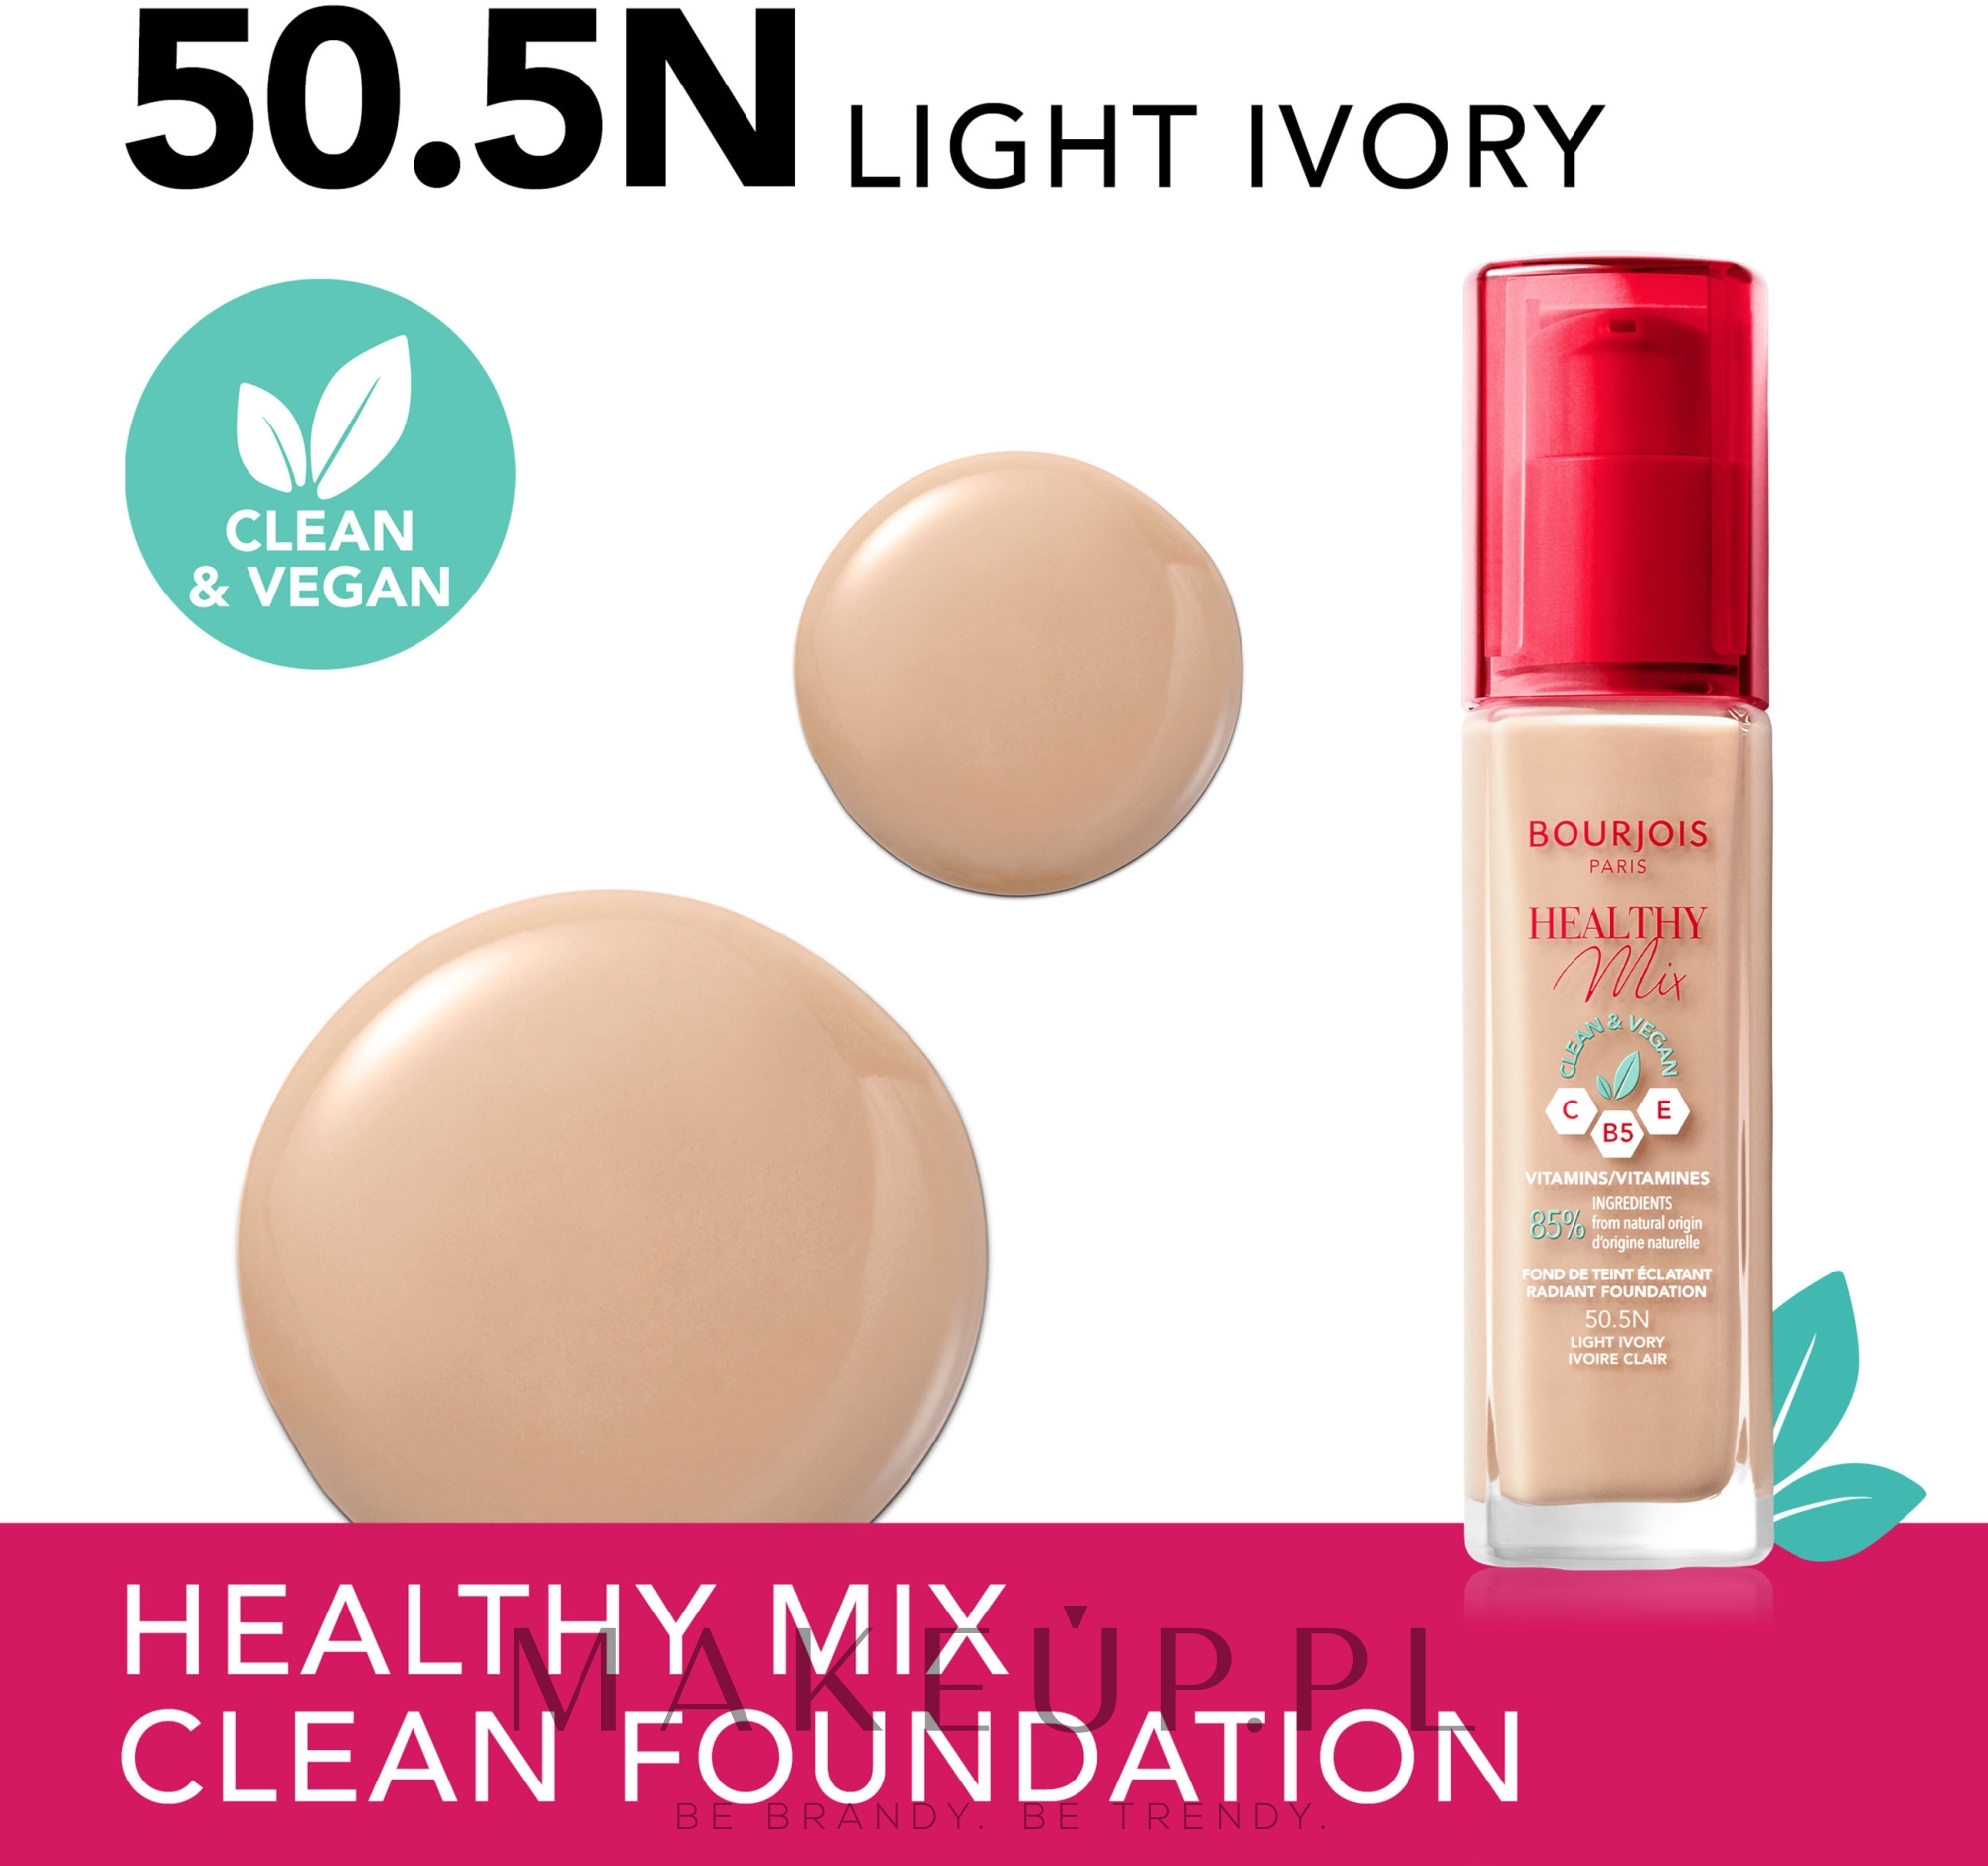 Wegański podkład rozświetlający - Bourjois Healthy Mix Clean & Vegan Foundation — Zdjęcie 50.5N - Light Ivory